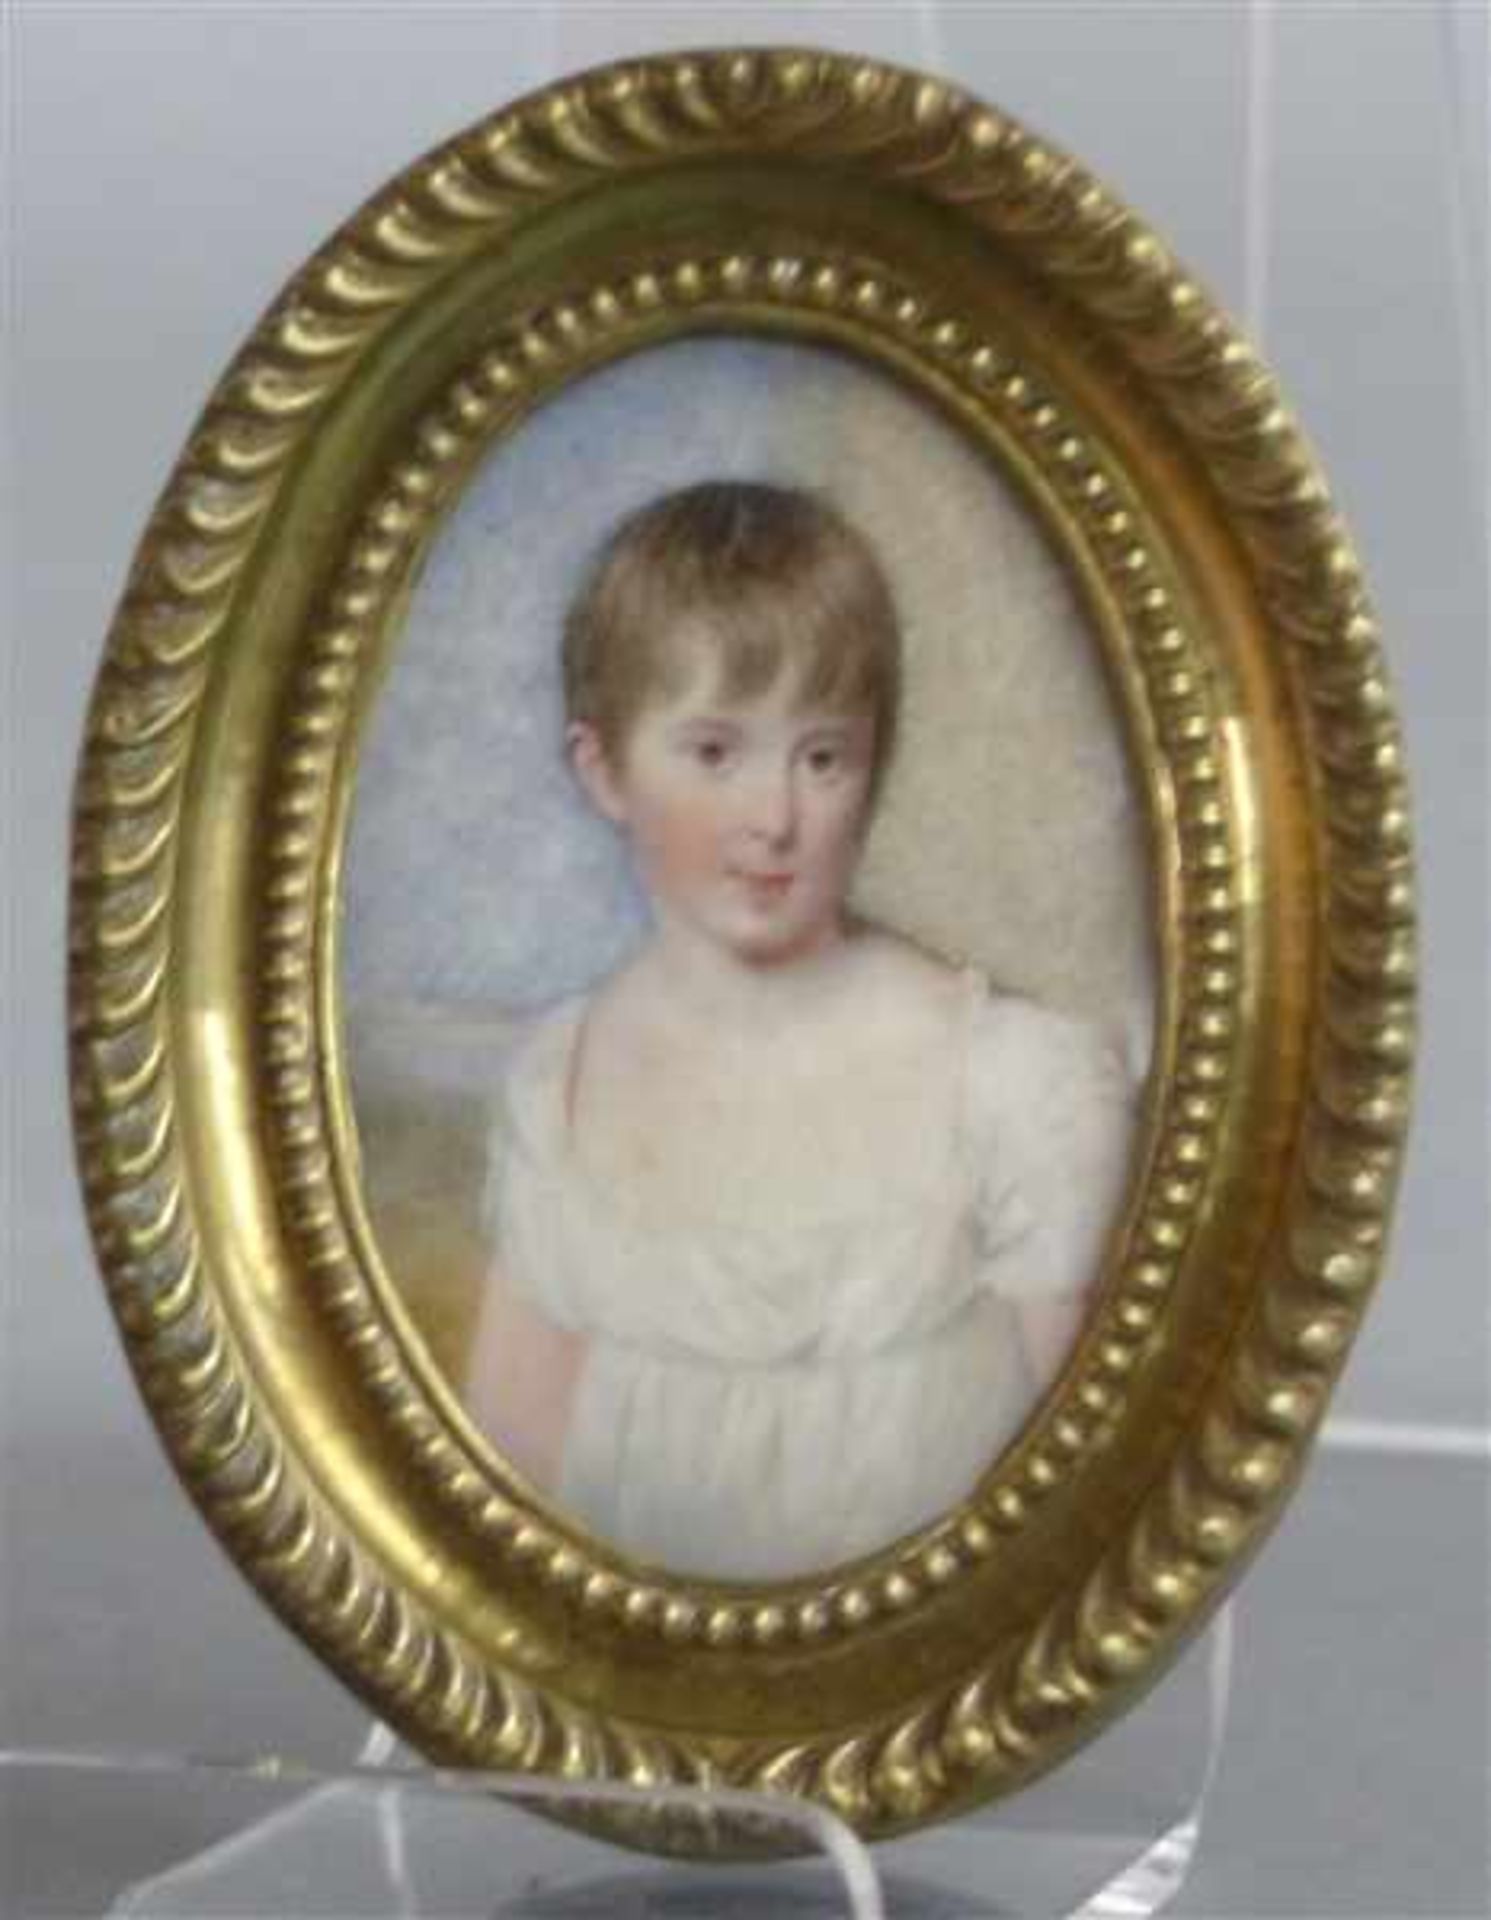 Miniatur, um 1880Aquarell und Guache auf Elfenbein, Mädchen im weißen Kleid, ovaler